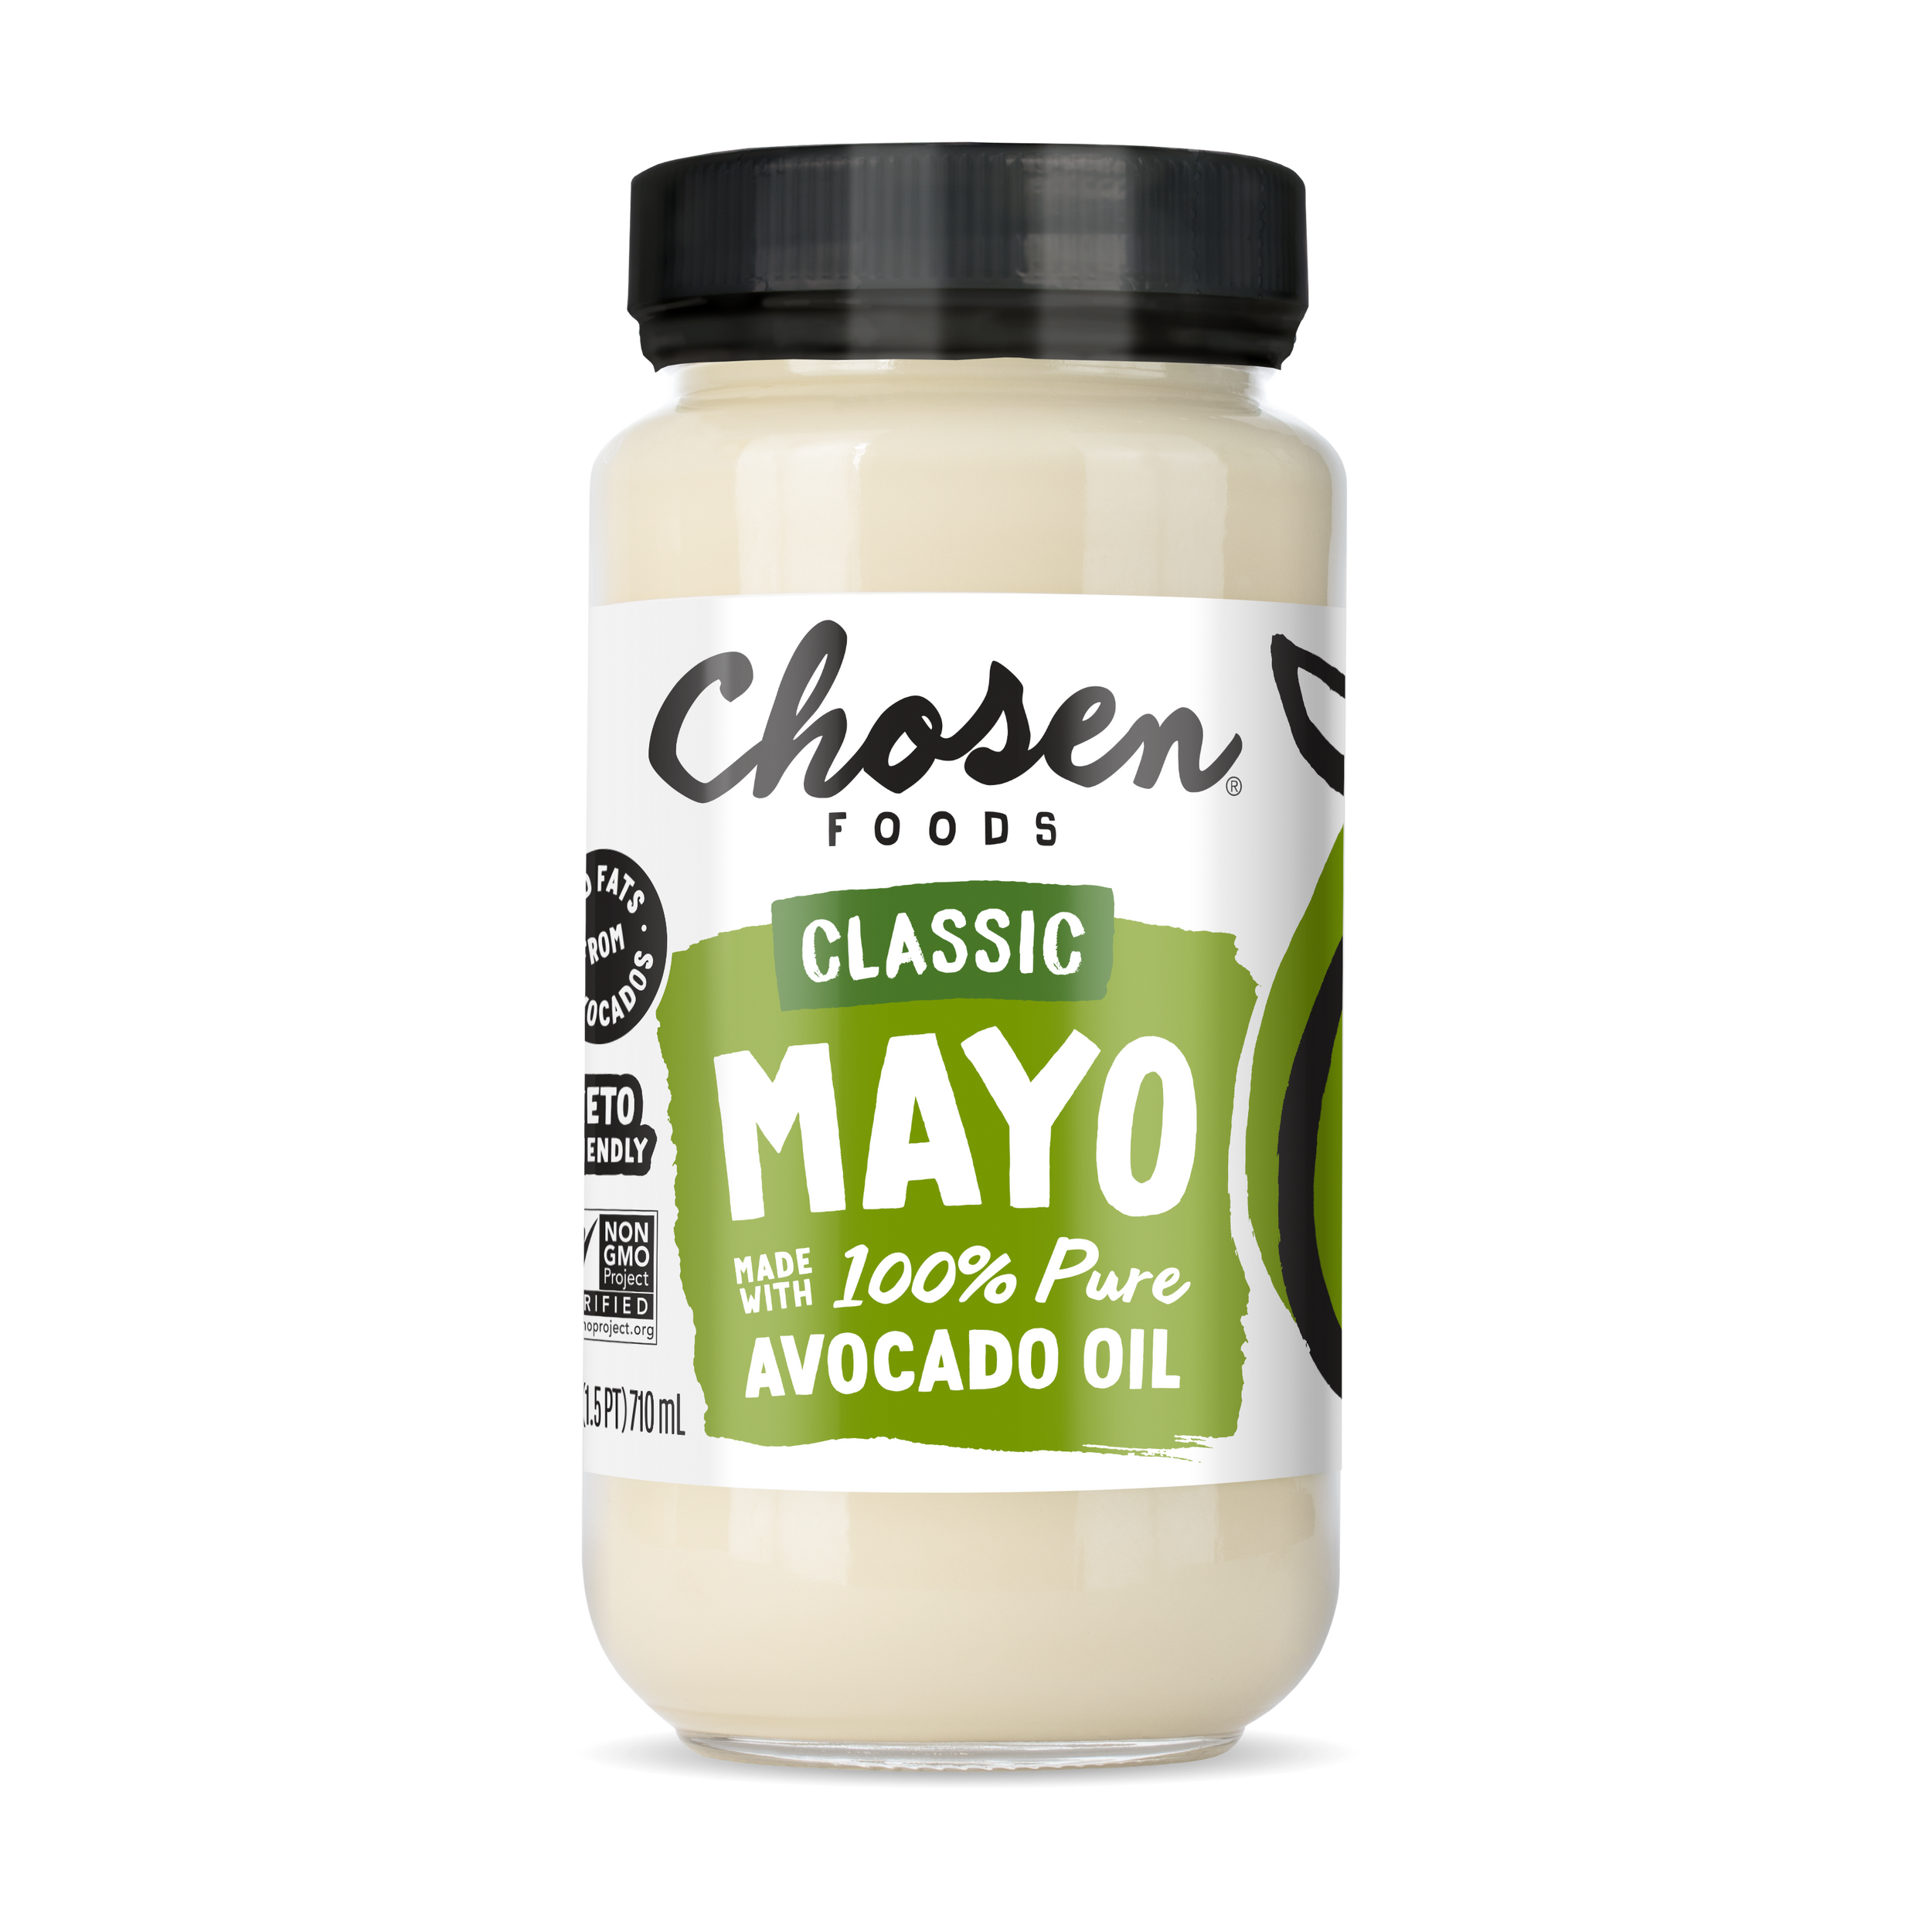 Classic Avocado Oil Mayo 24oz Glass Jar